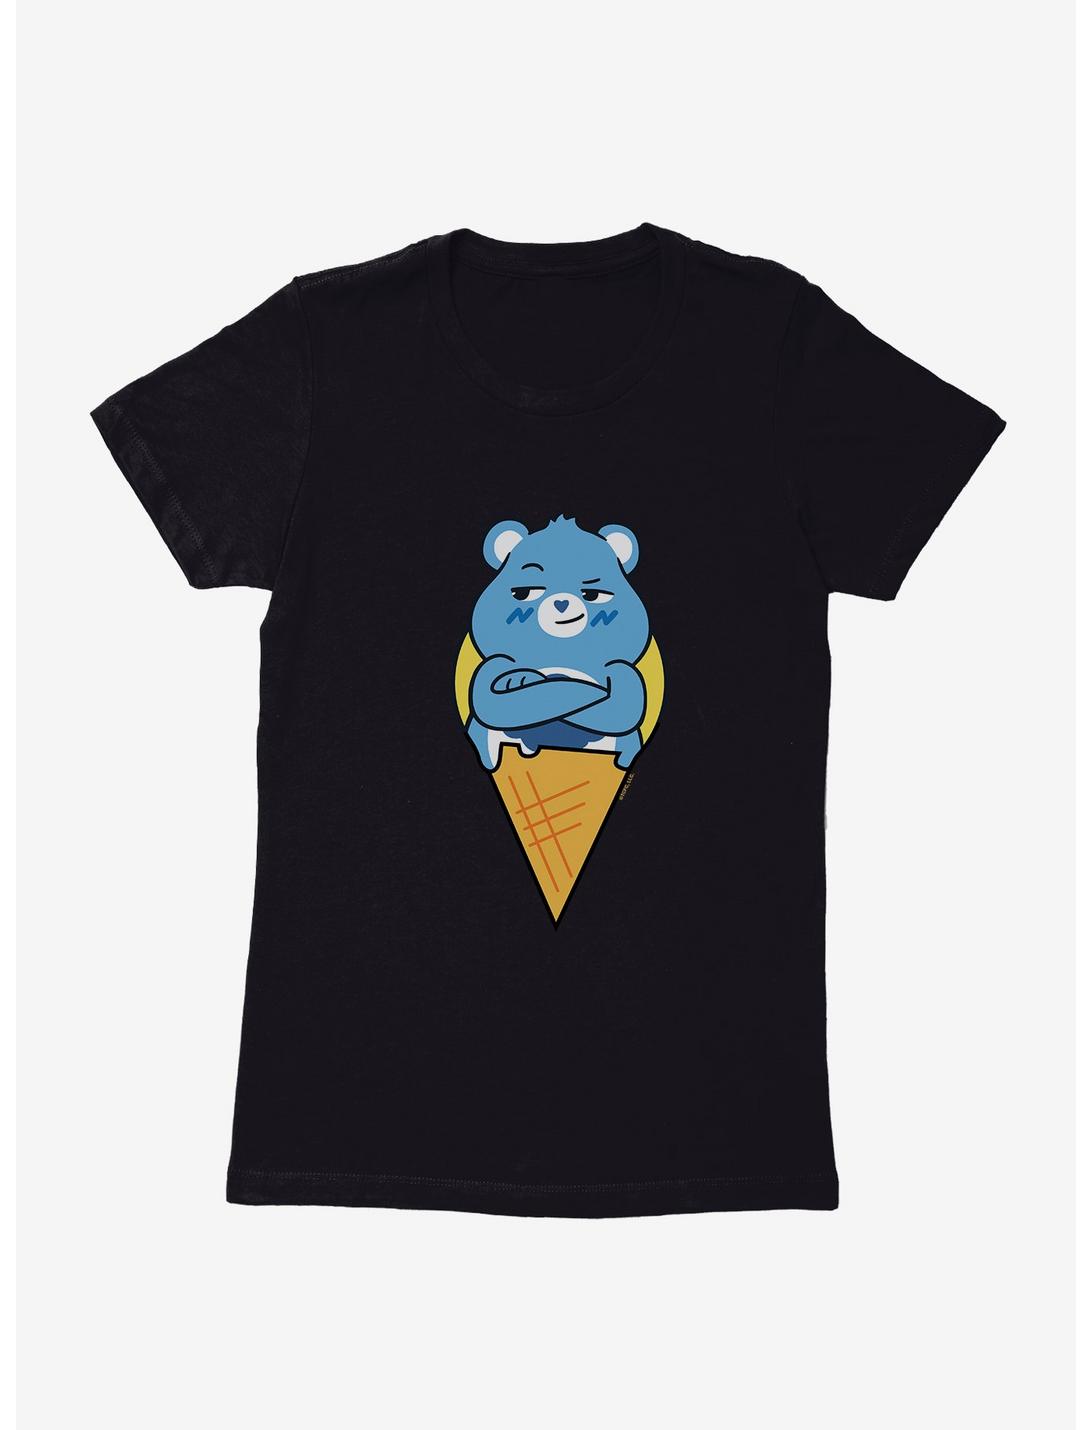 Care Bears Grumpy Bear Taiyaki Time Womens T-Shirt, BLACK, hi-res